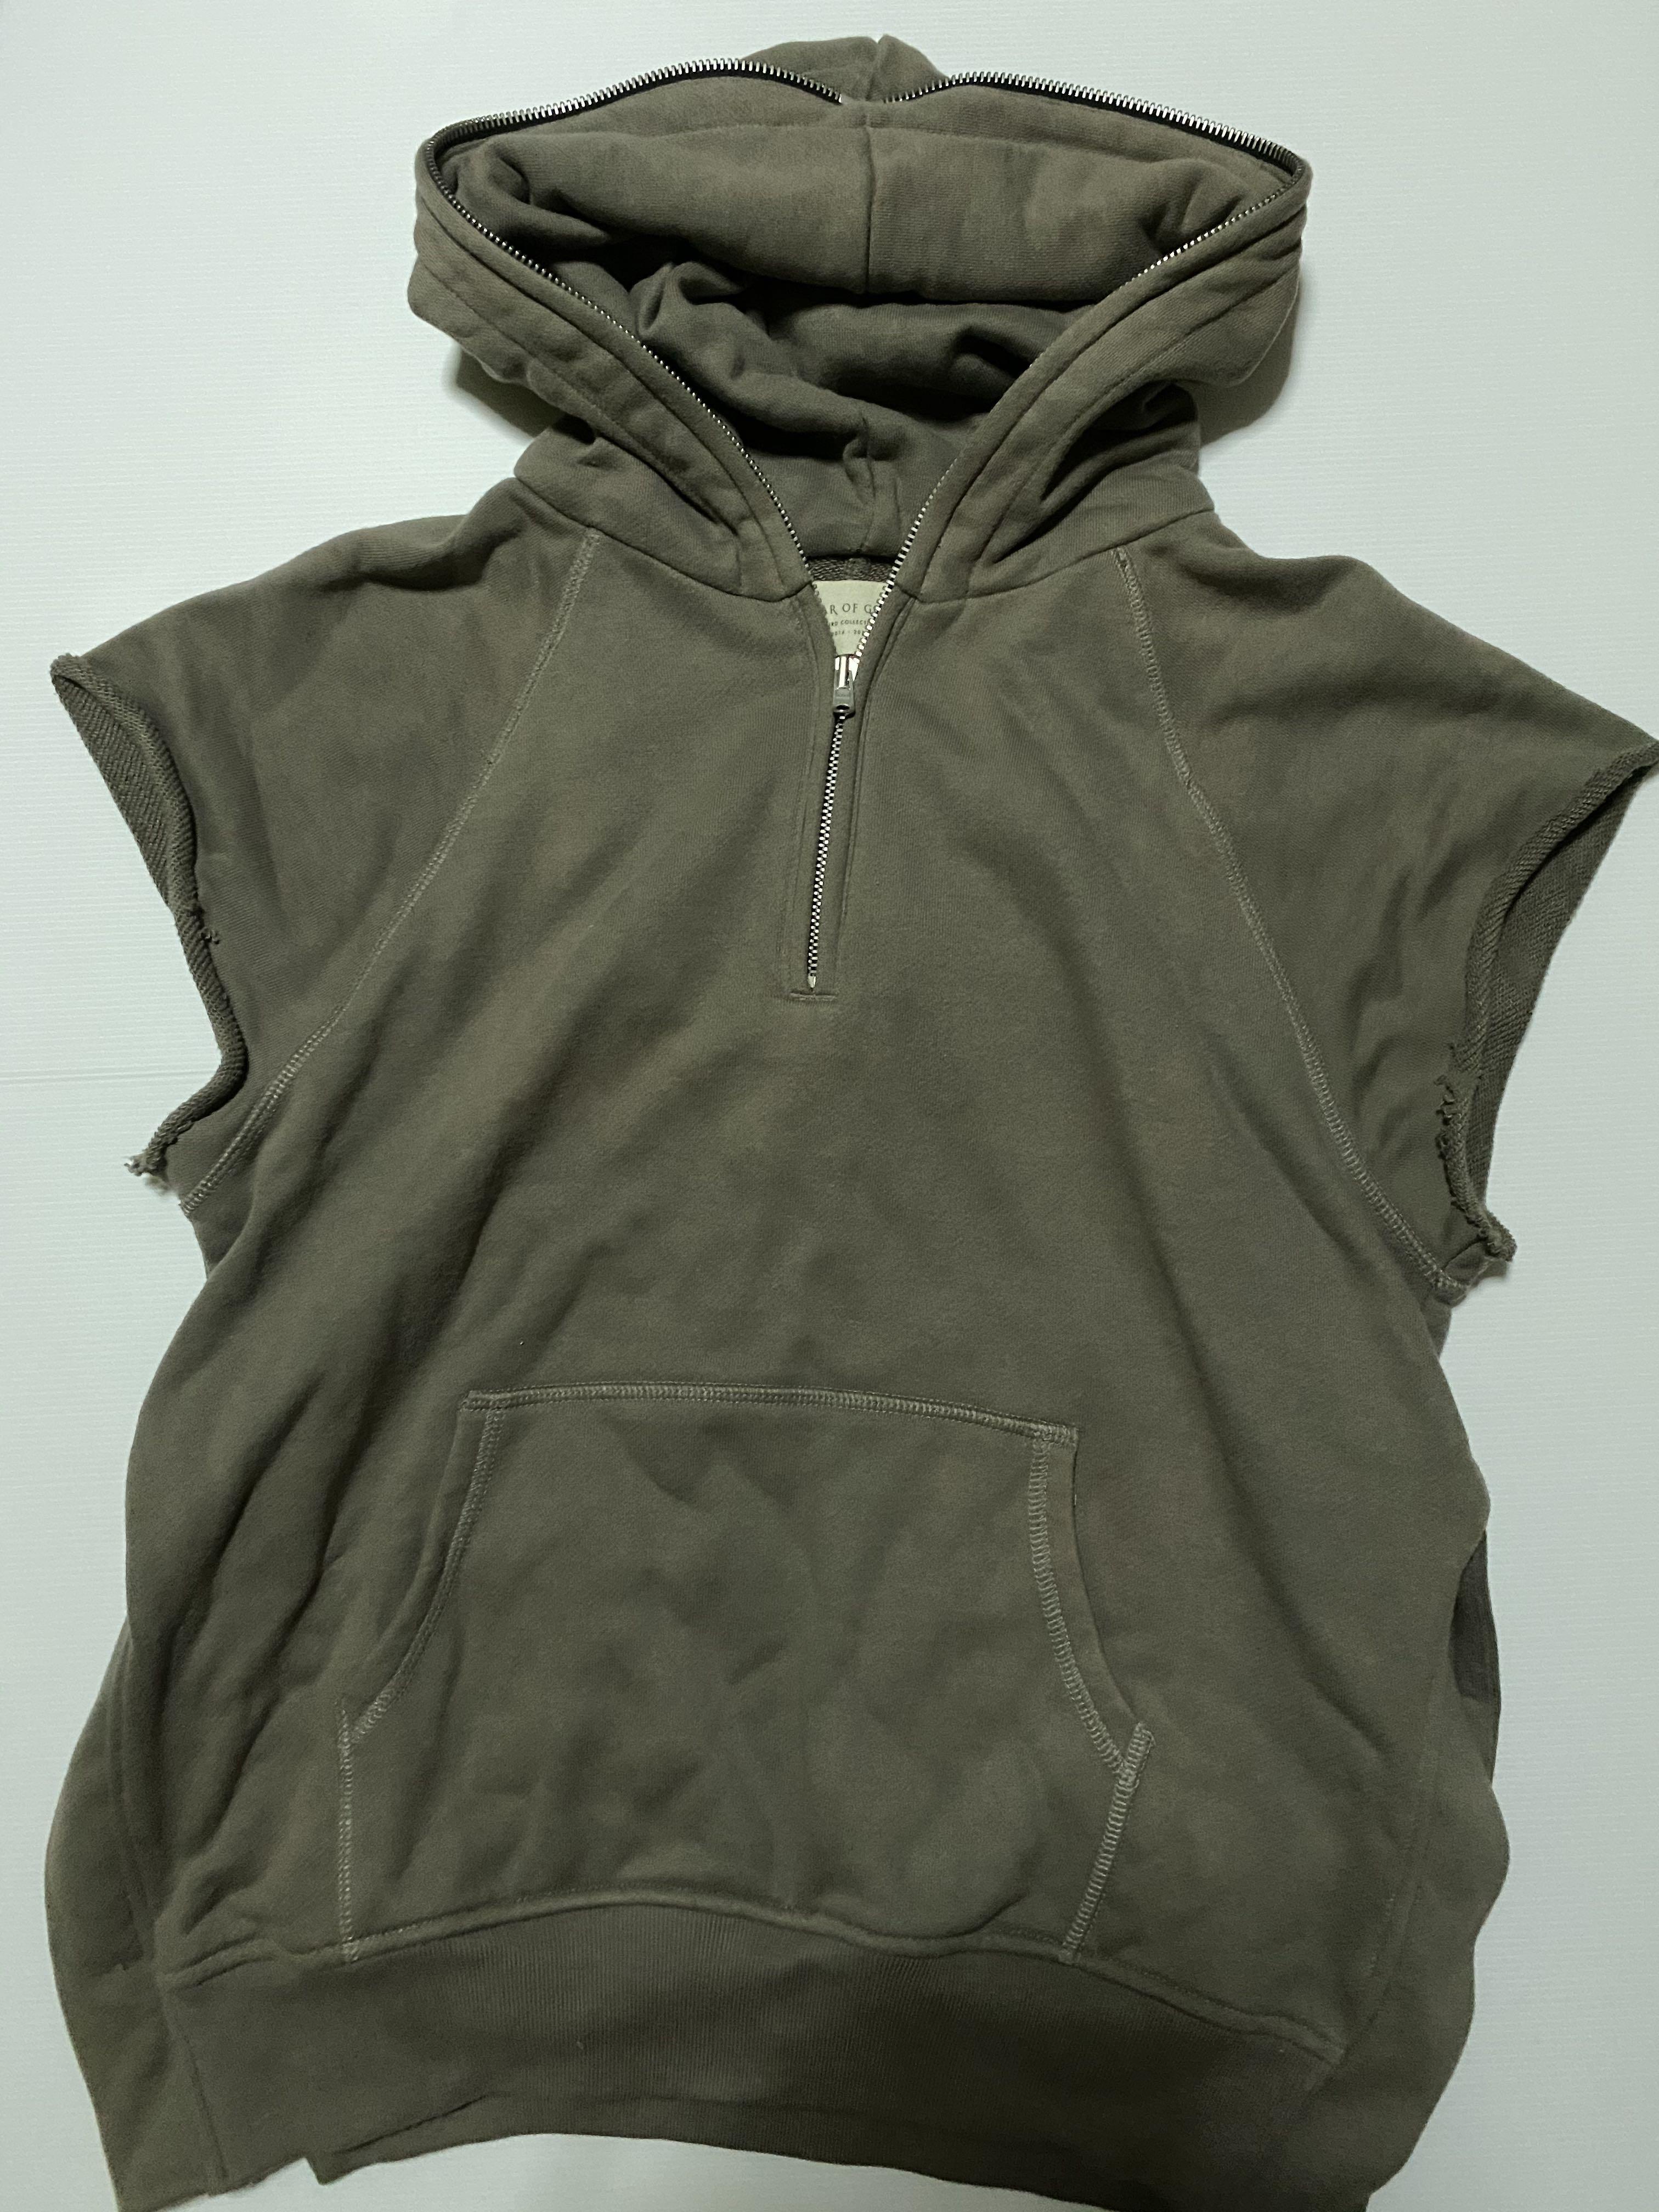 ６１．５裄丈fear of god third collection hoodie